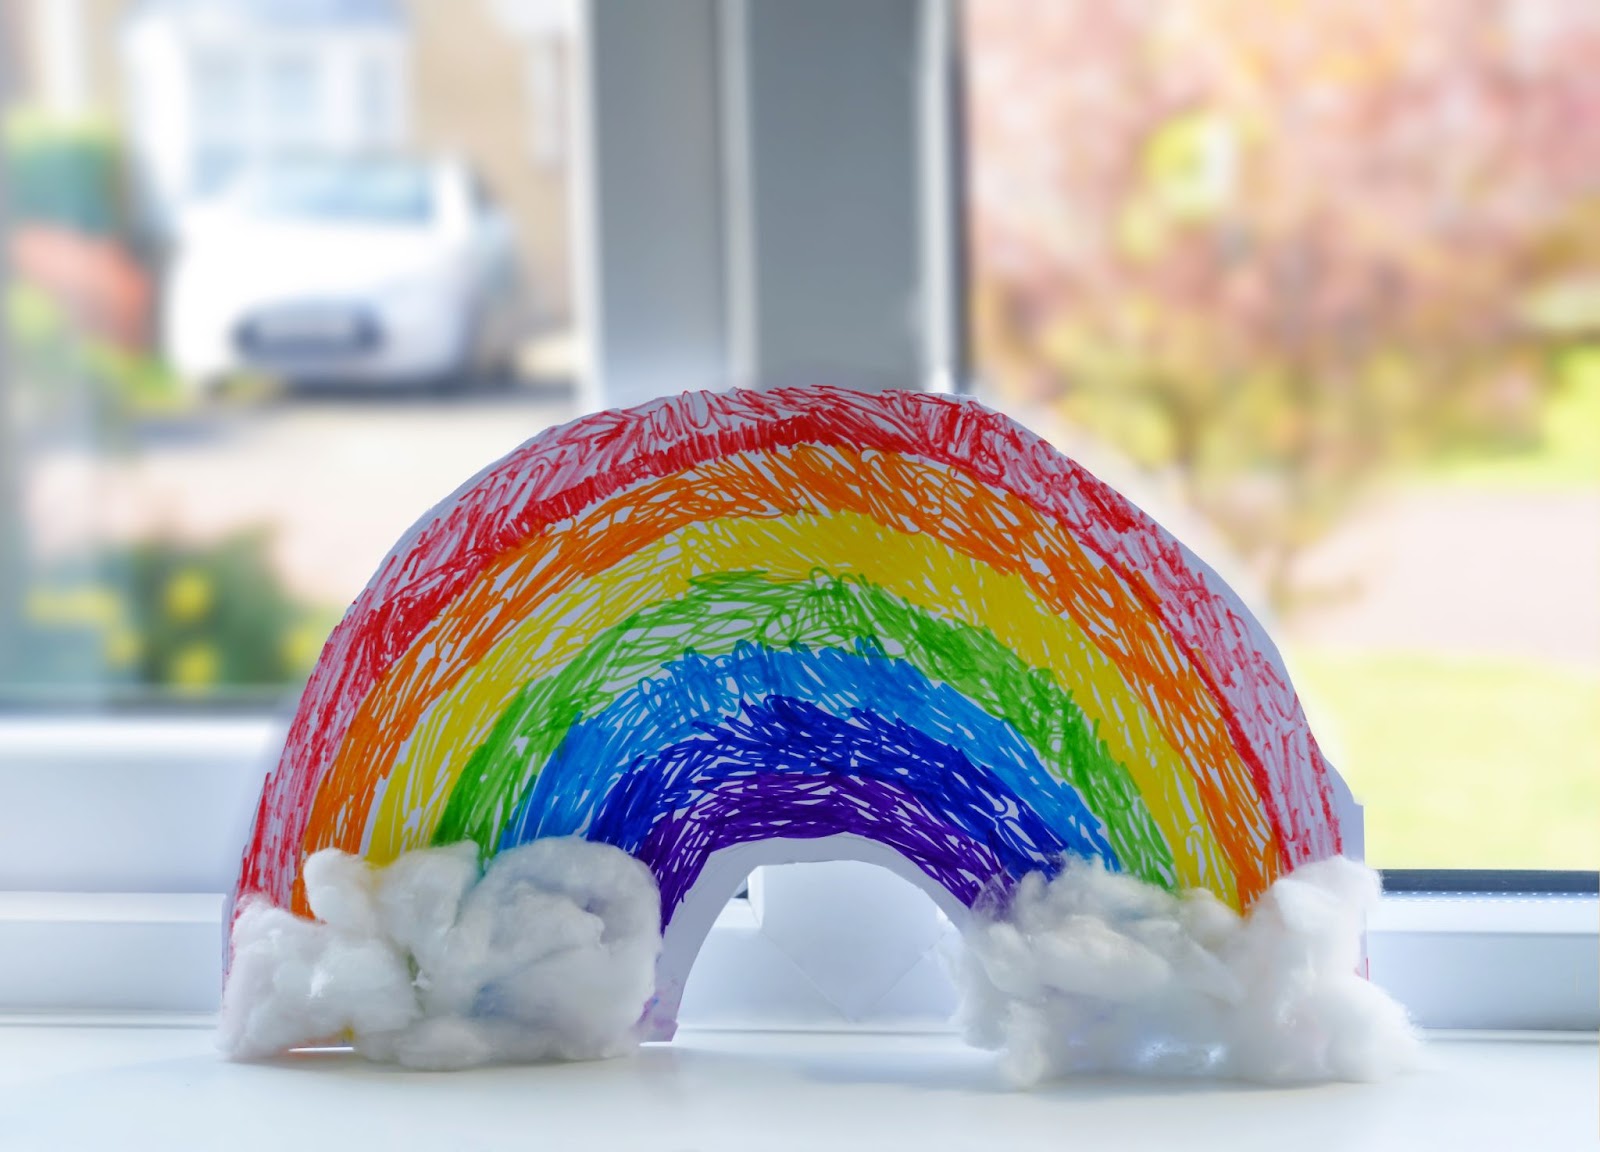 Go Create Rainbow Suncatcher Paint Pens, 12 Bright Colors